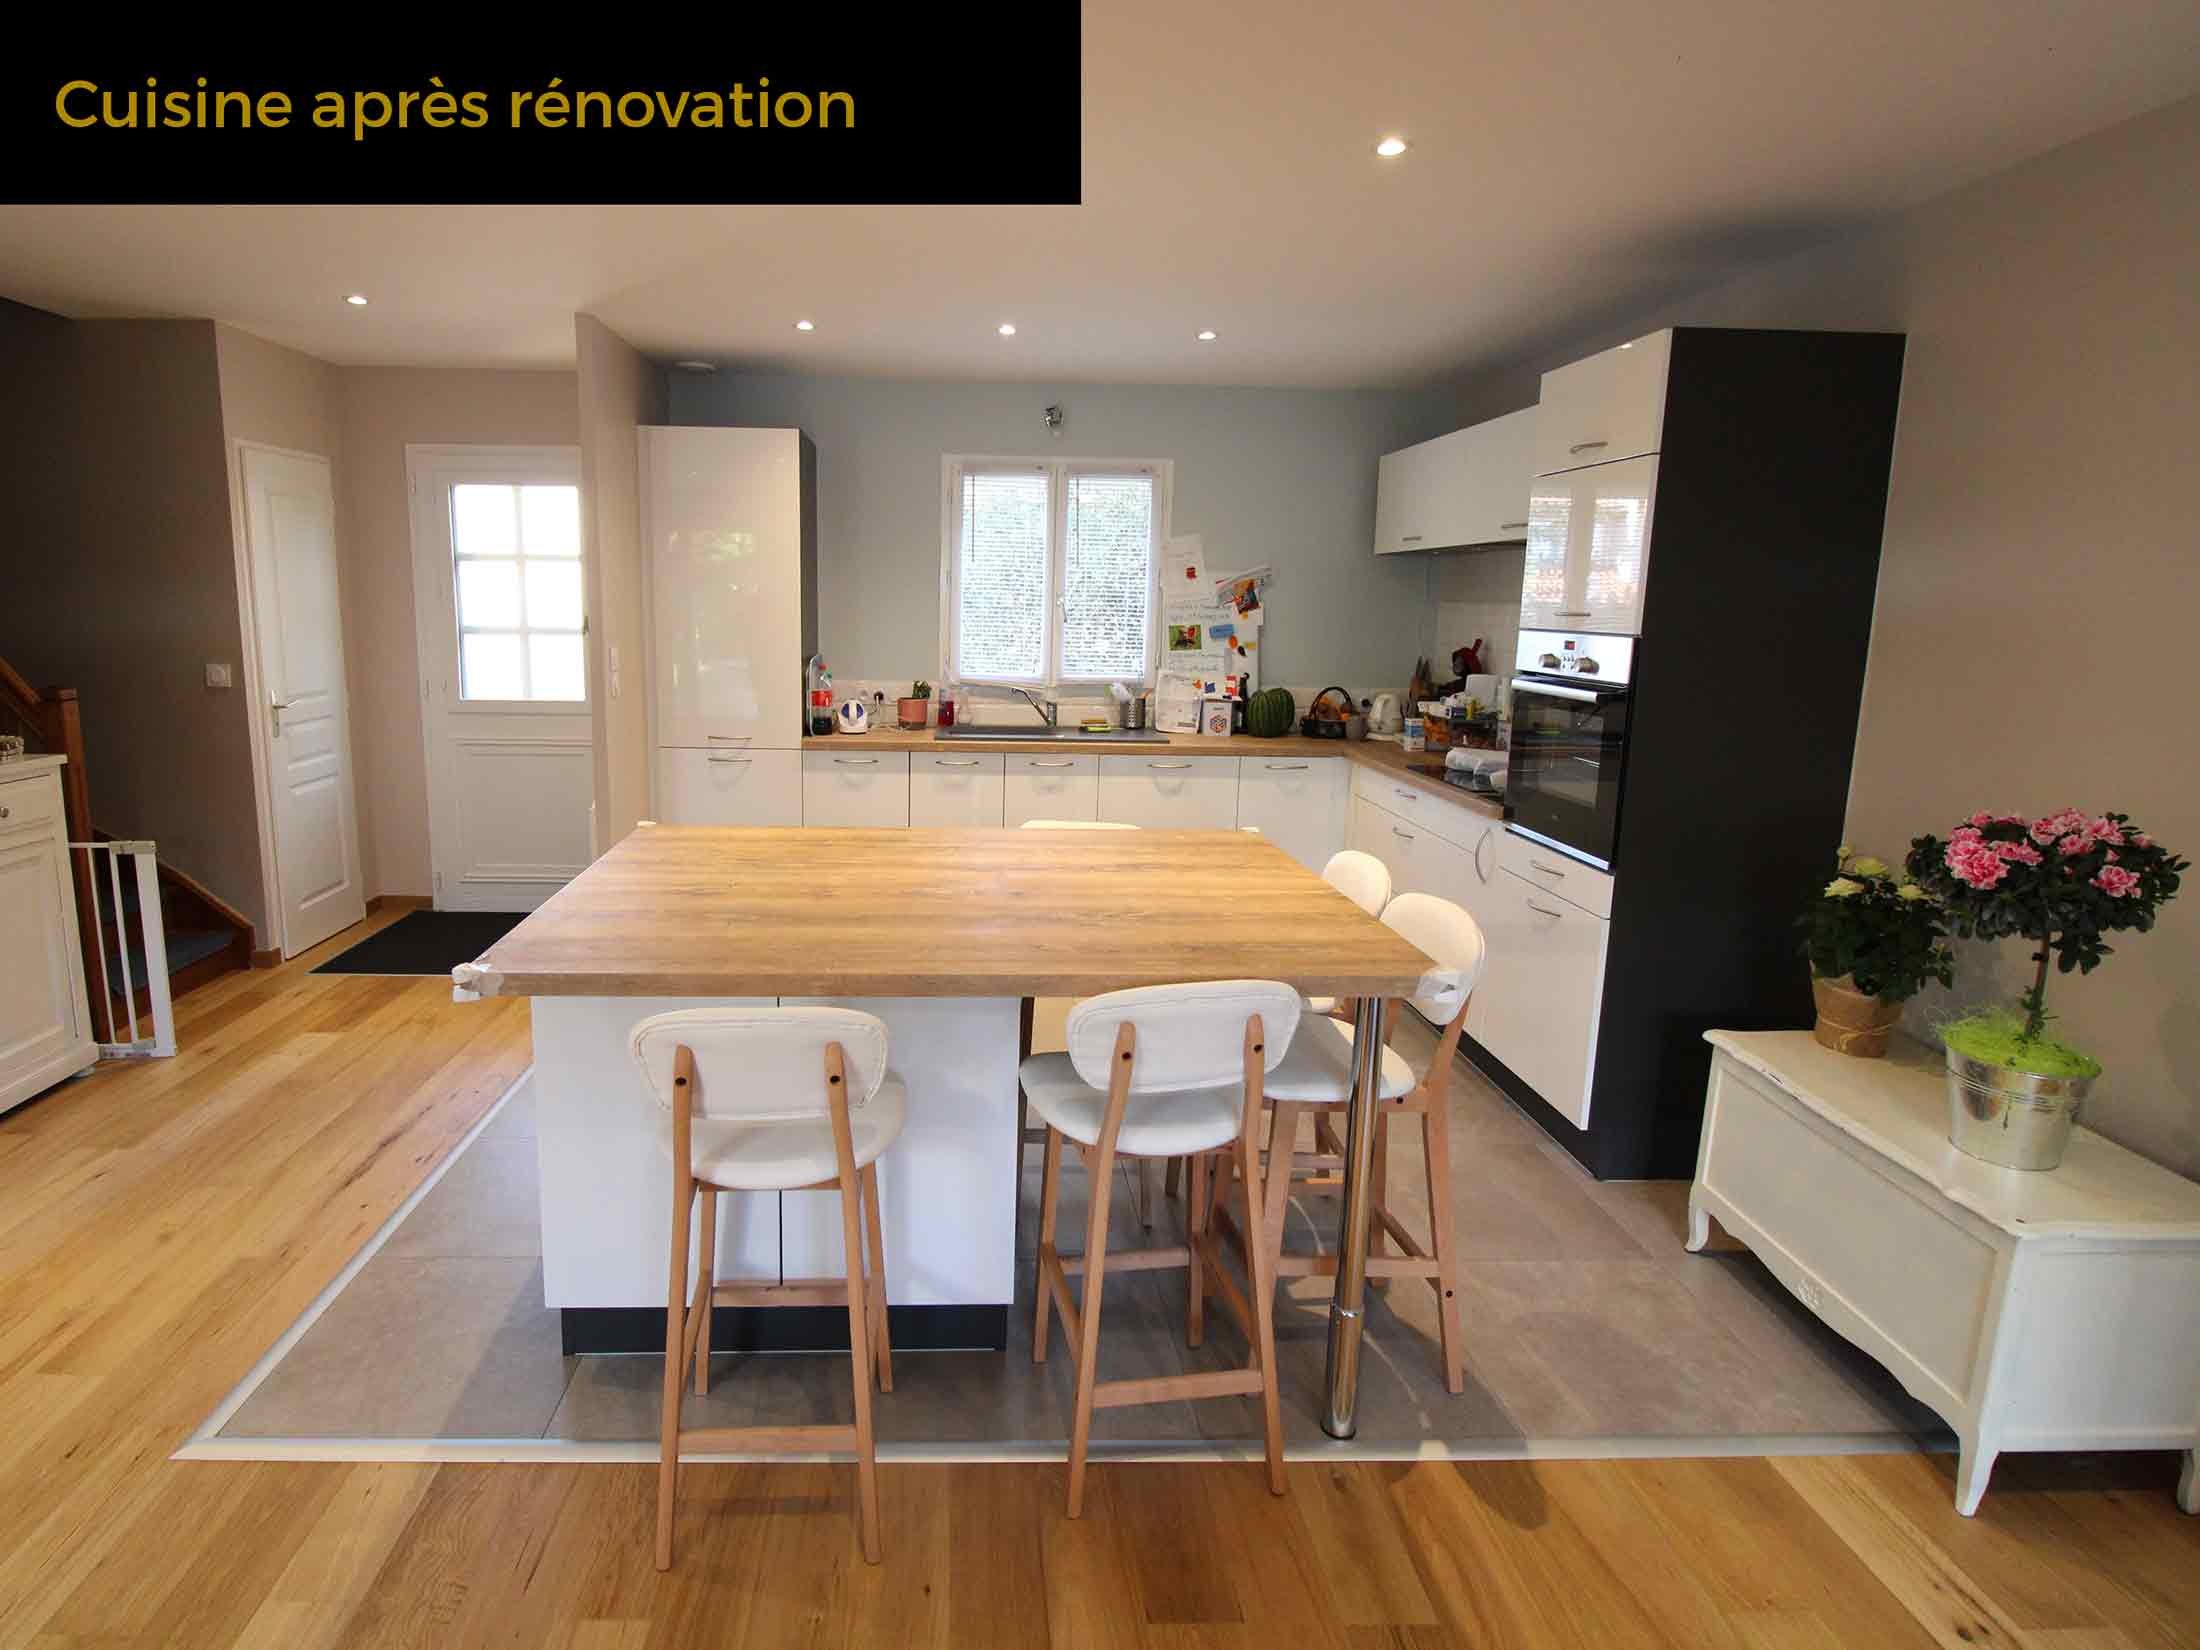 13b-cuisine-apres-renovation-maison-champagne